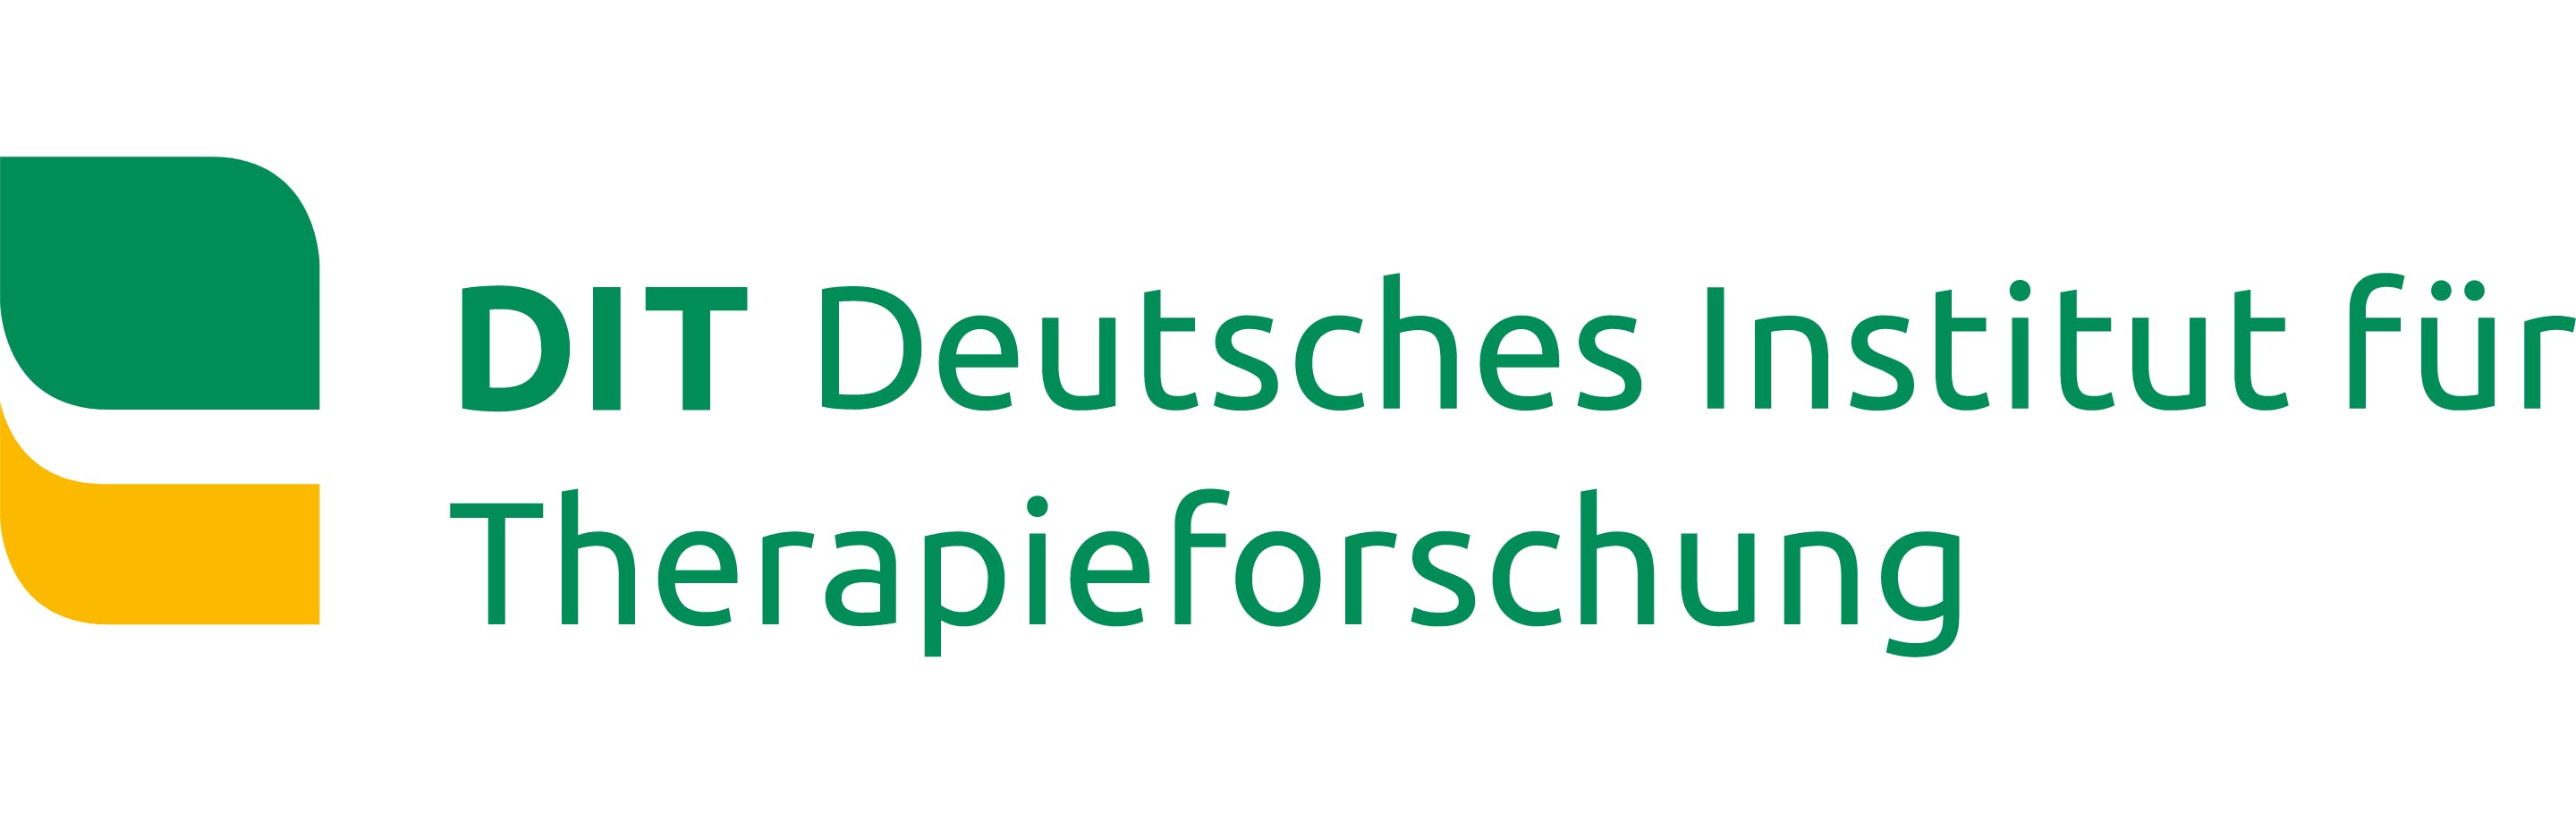 Deutsches Institut für Therapieforschung: Forschen, fördern, beraten